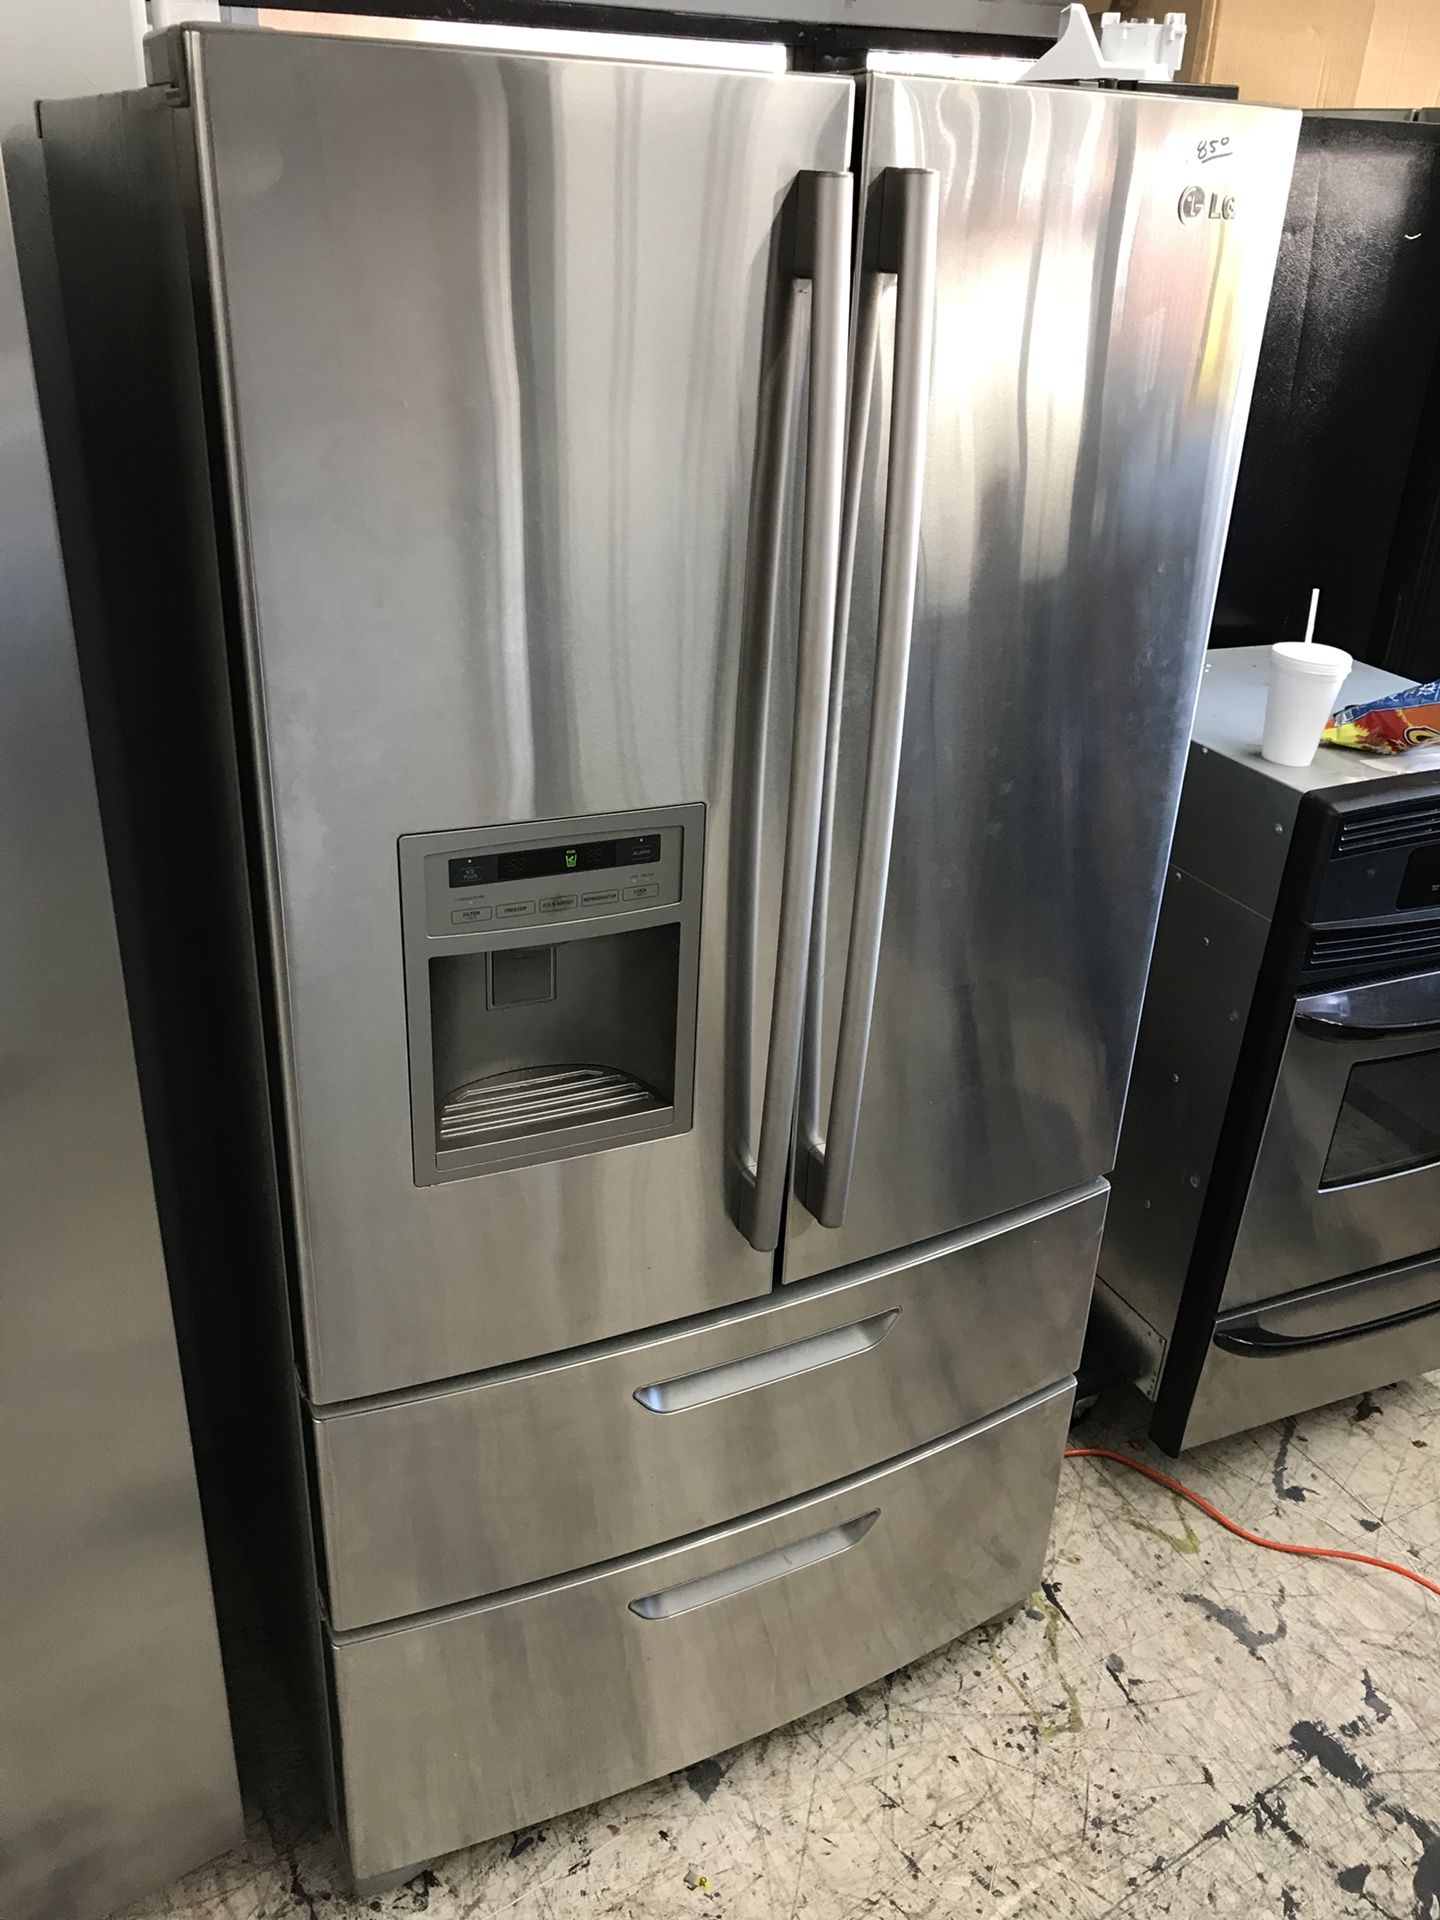 LG four door fridge/freezer stainless steel like new